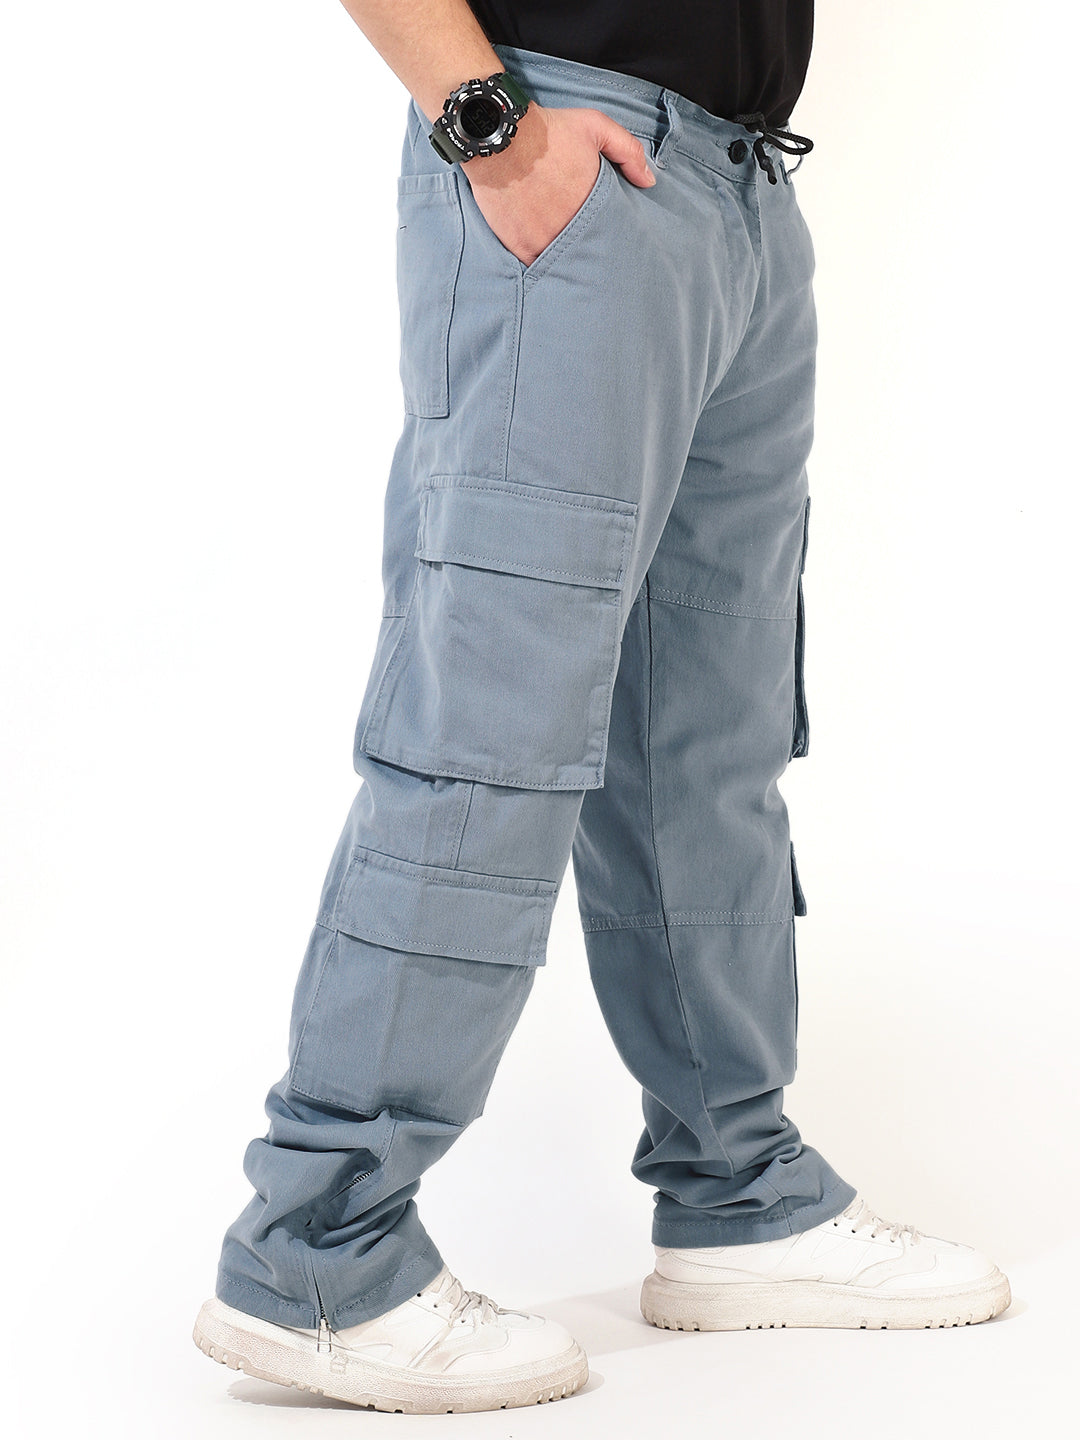 Military Style Branded Cargo Pants For Men Sports Trousers For Men Flipkart  211108 From Kong04, $14.83 | DHgate.Com